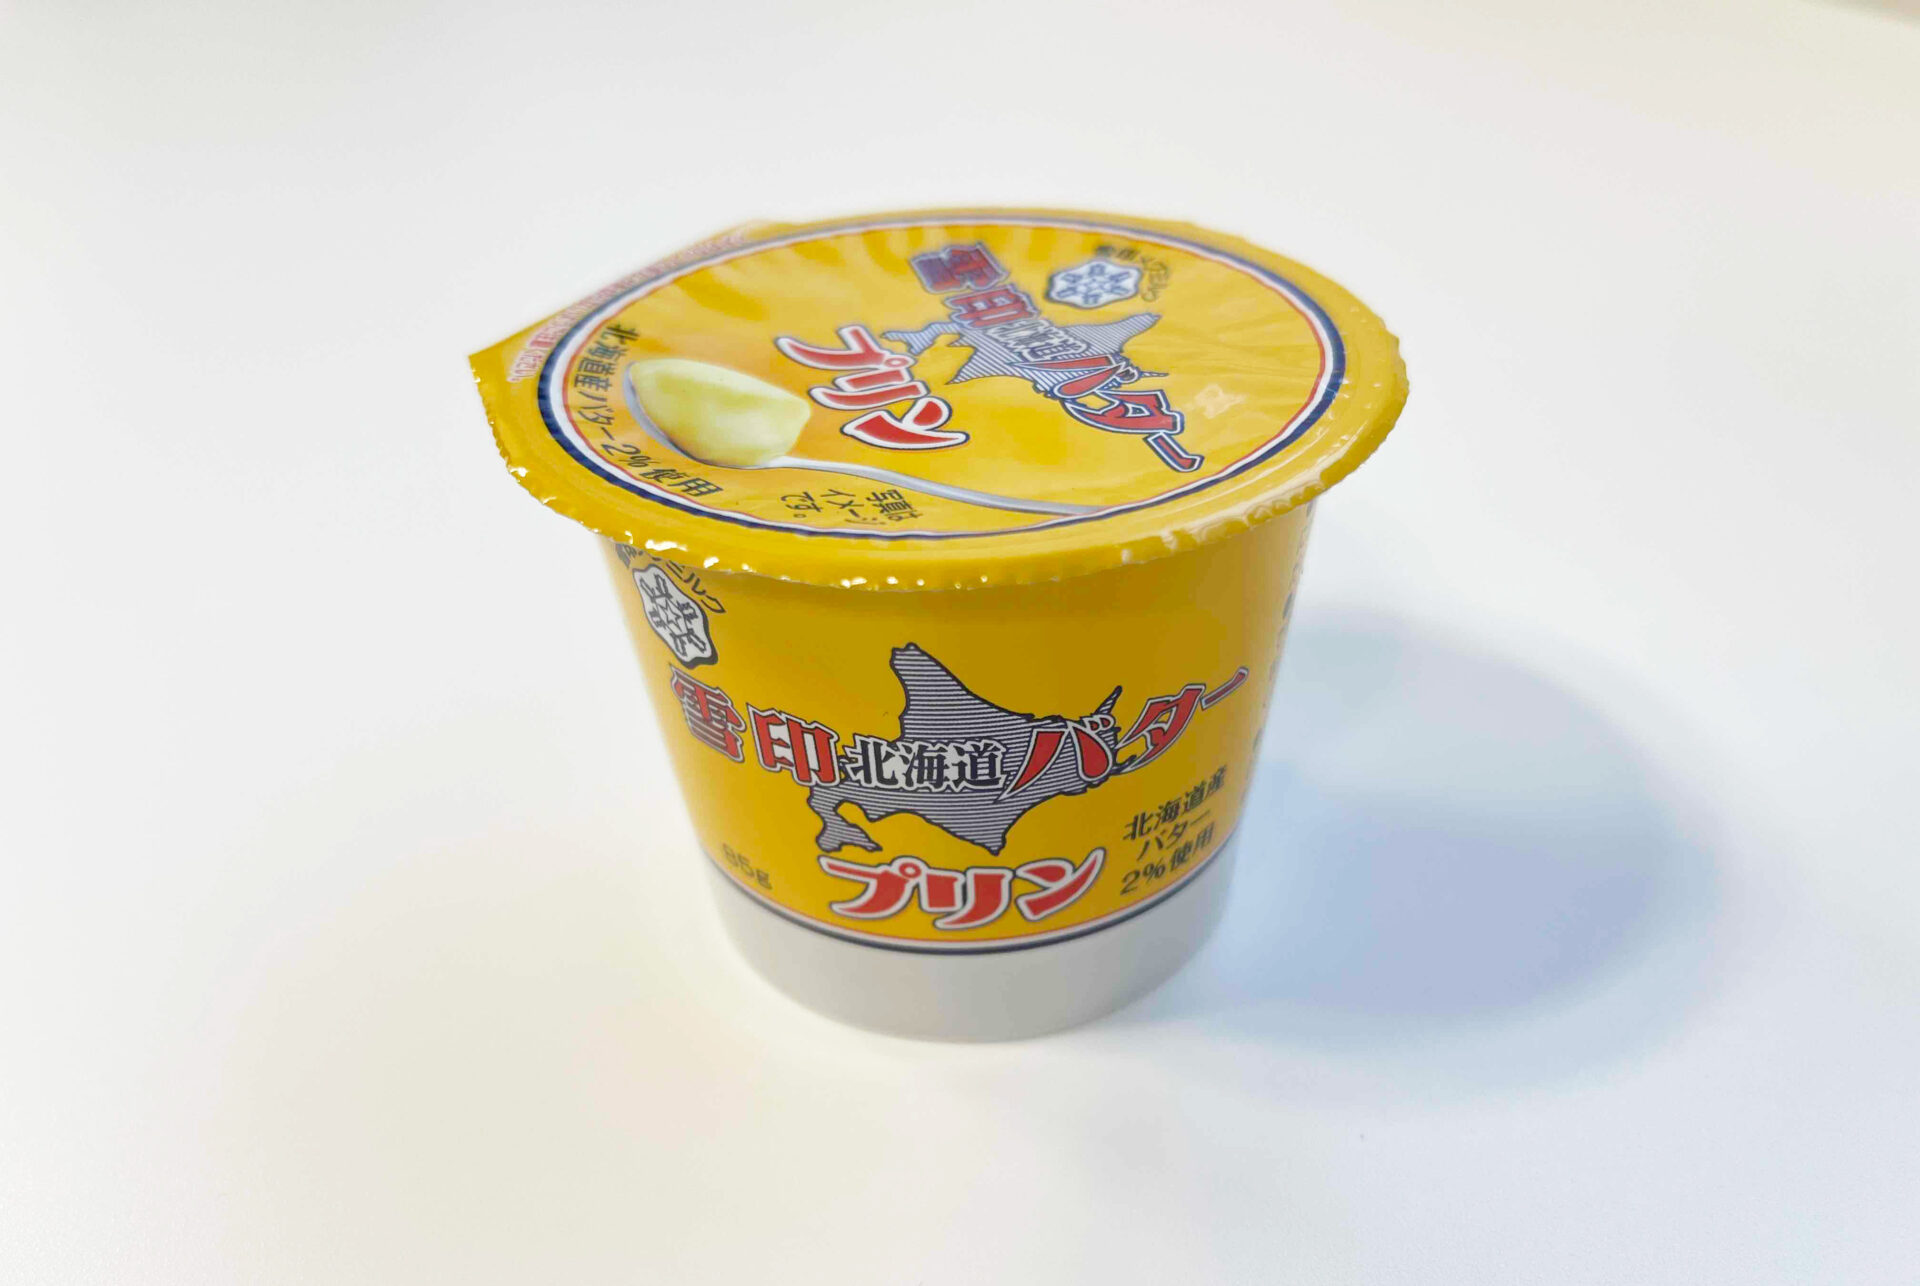 ゆきじるし北海道バタープリンの商品写真。ゆきじるし北海道バターのような、全体的に黄色いパッケージです